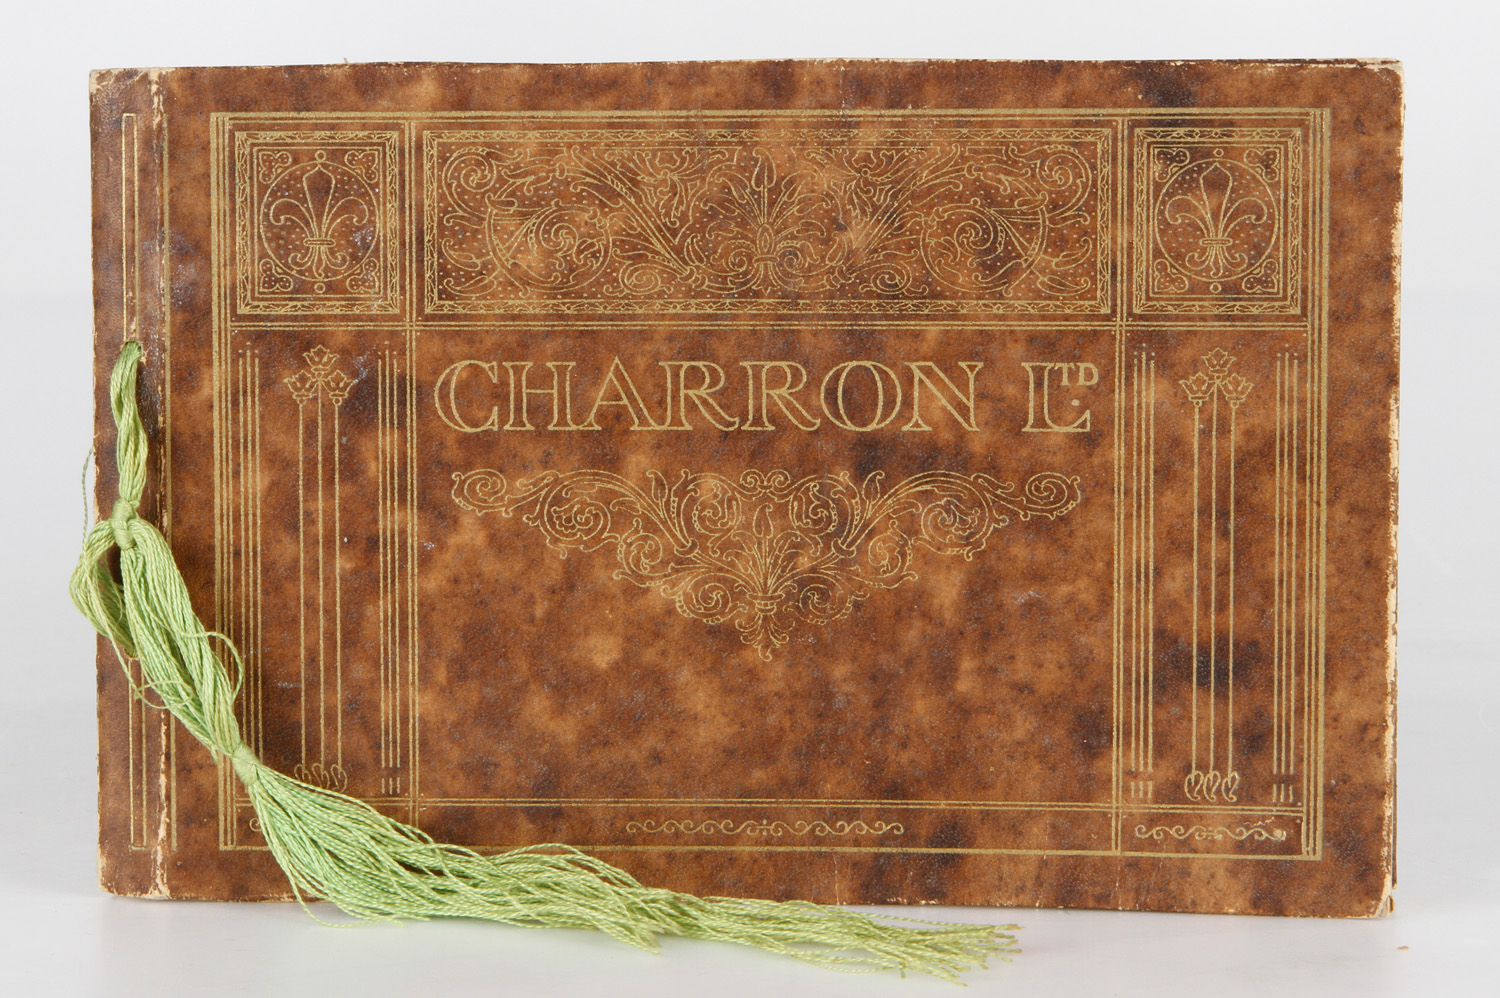 Autokatalog, Charron LTD 1912 @ franz., geprägter Einband, farbig bebildert, leichte